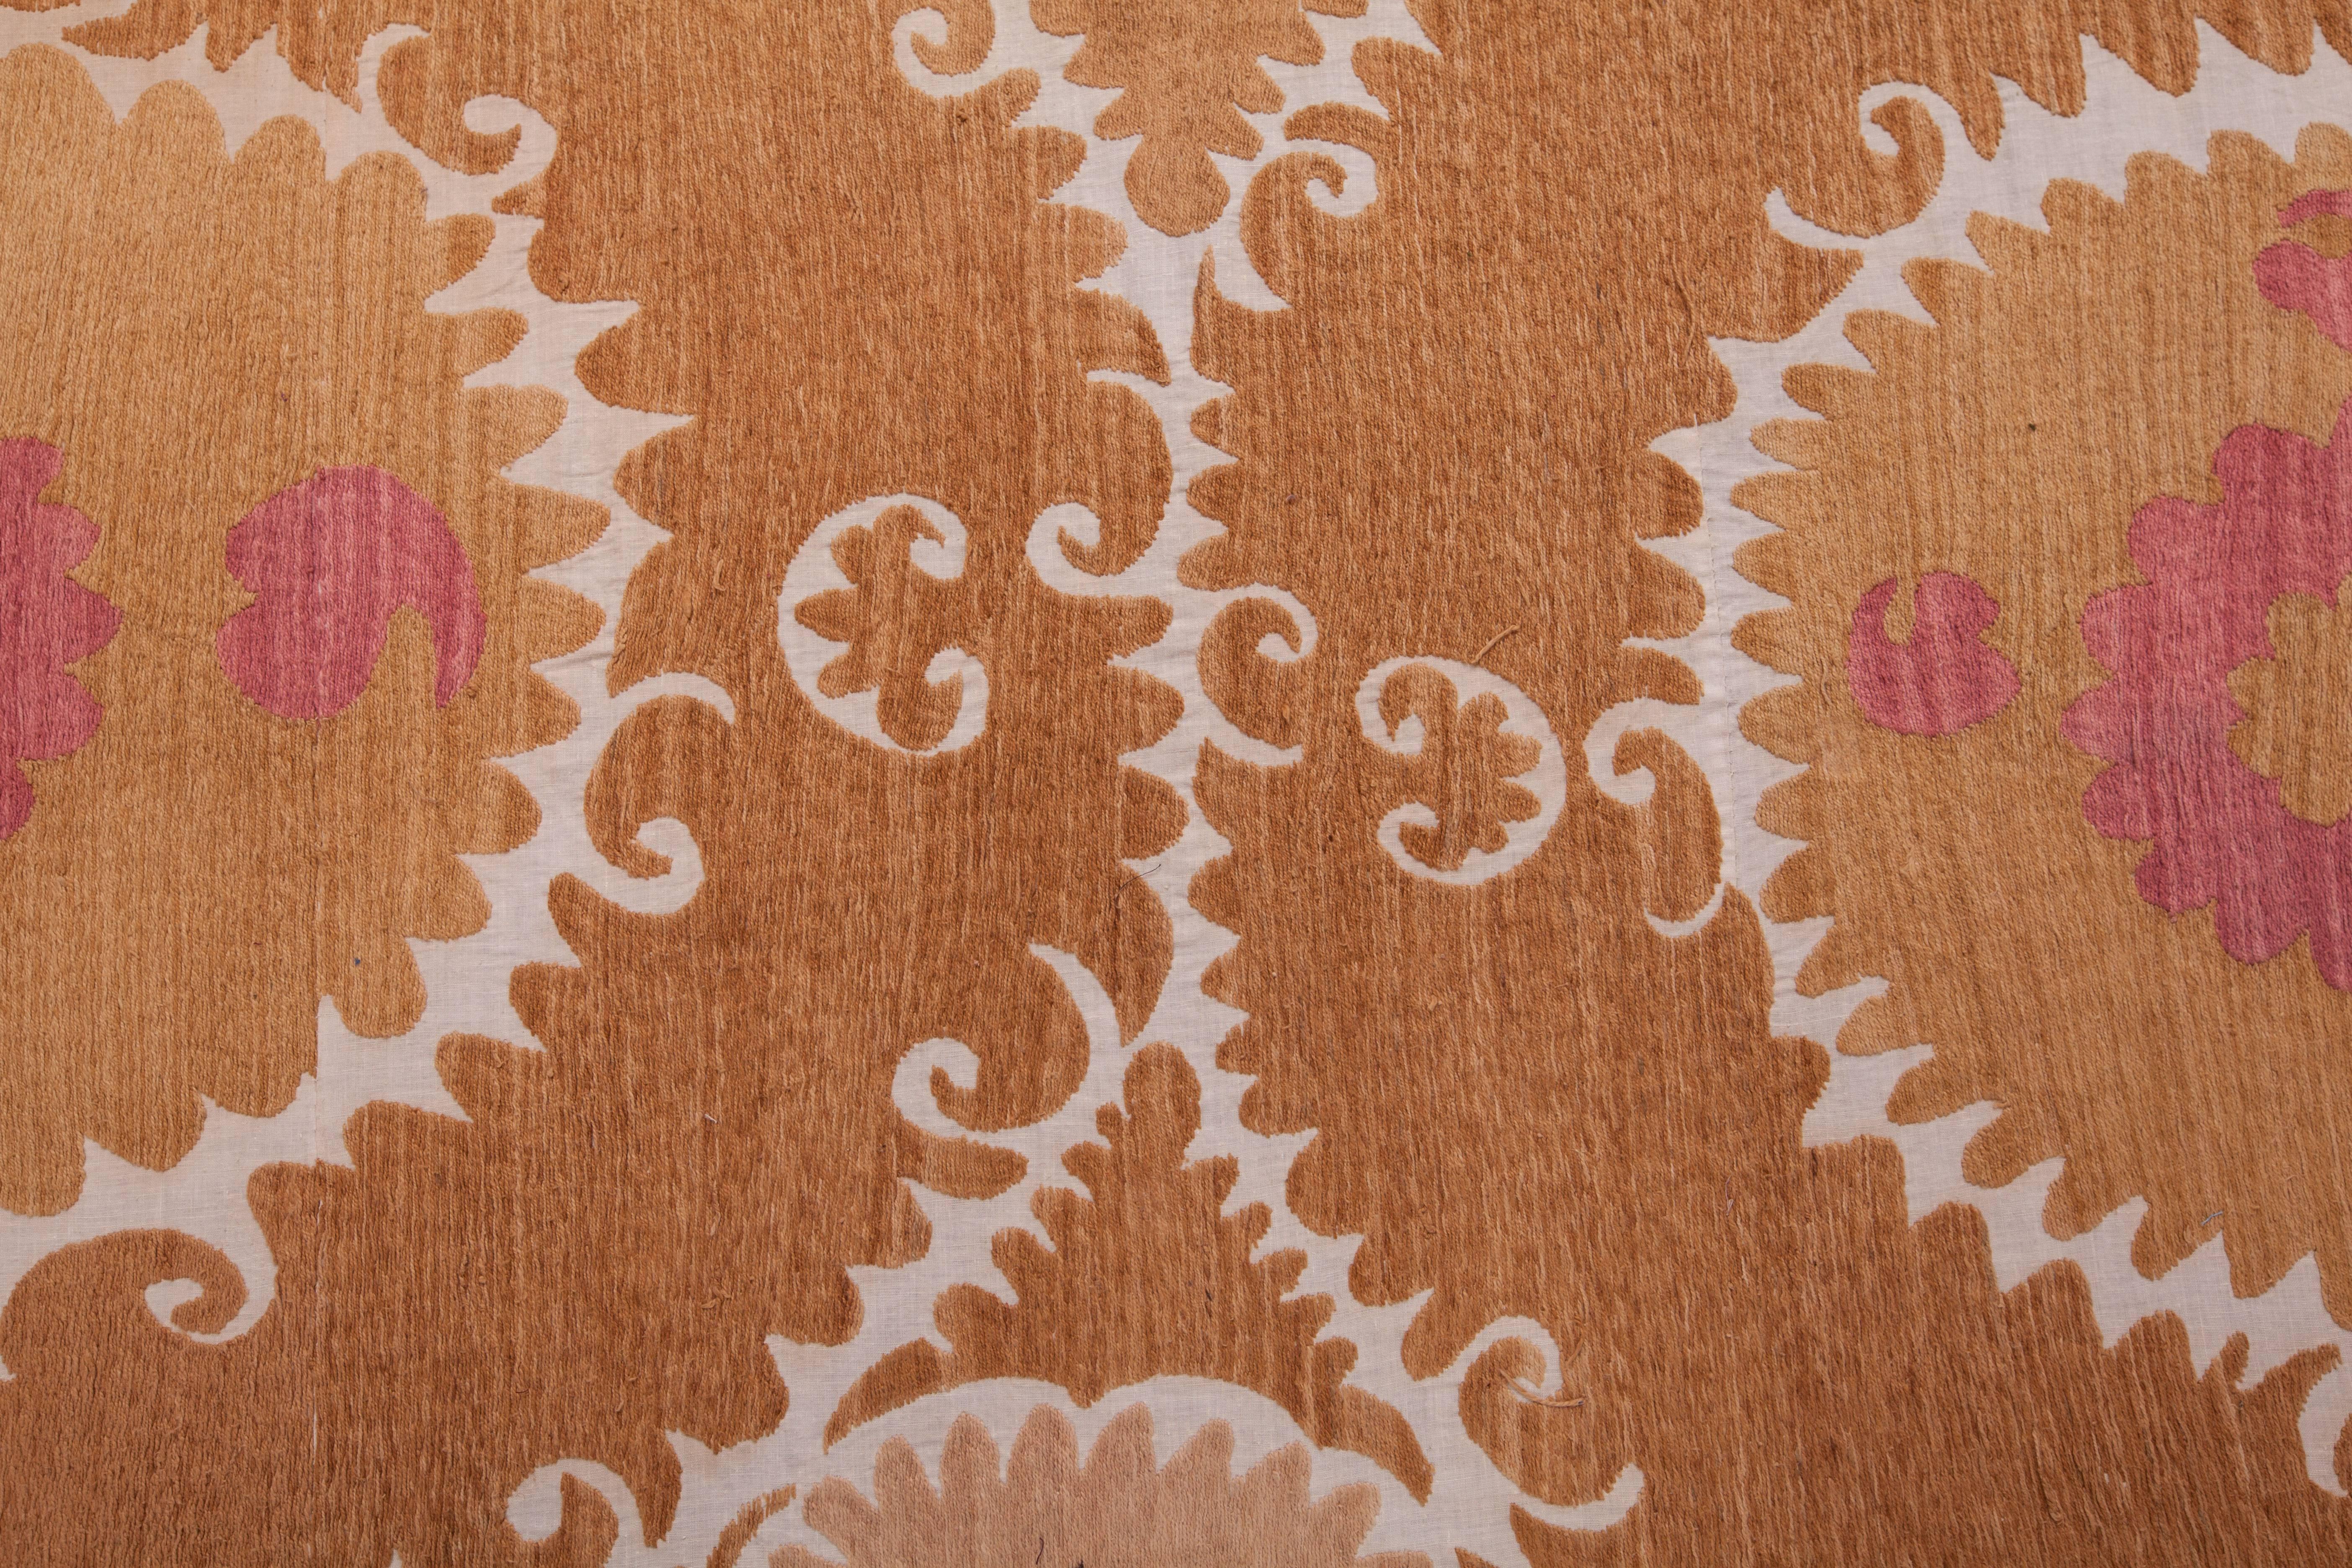 Embroidered Mid-20th Century Uzbek Samarkand Suzani in Cotton